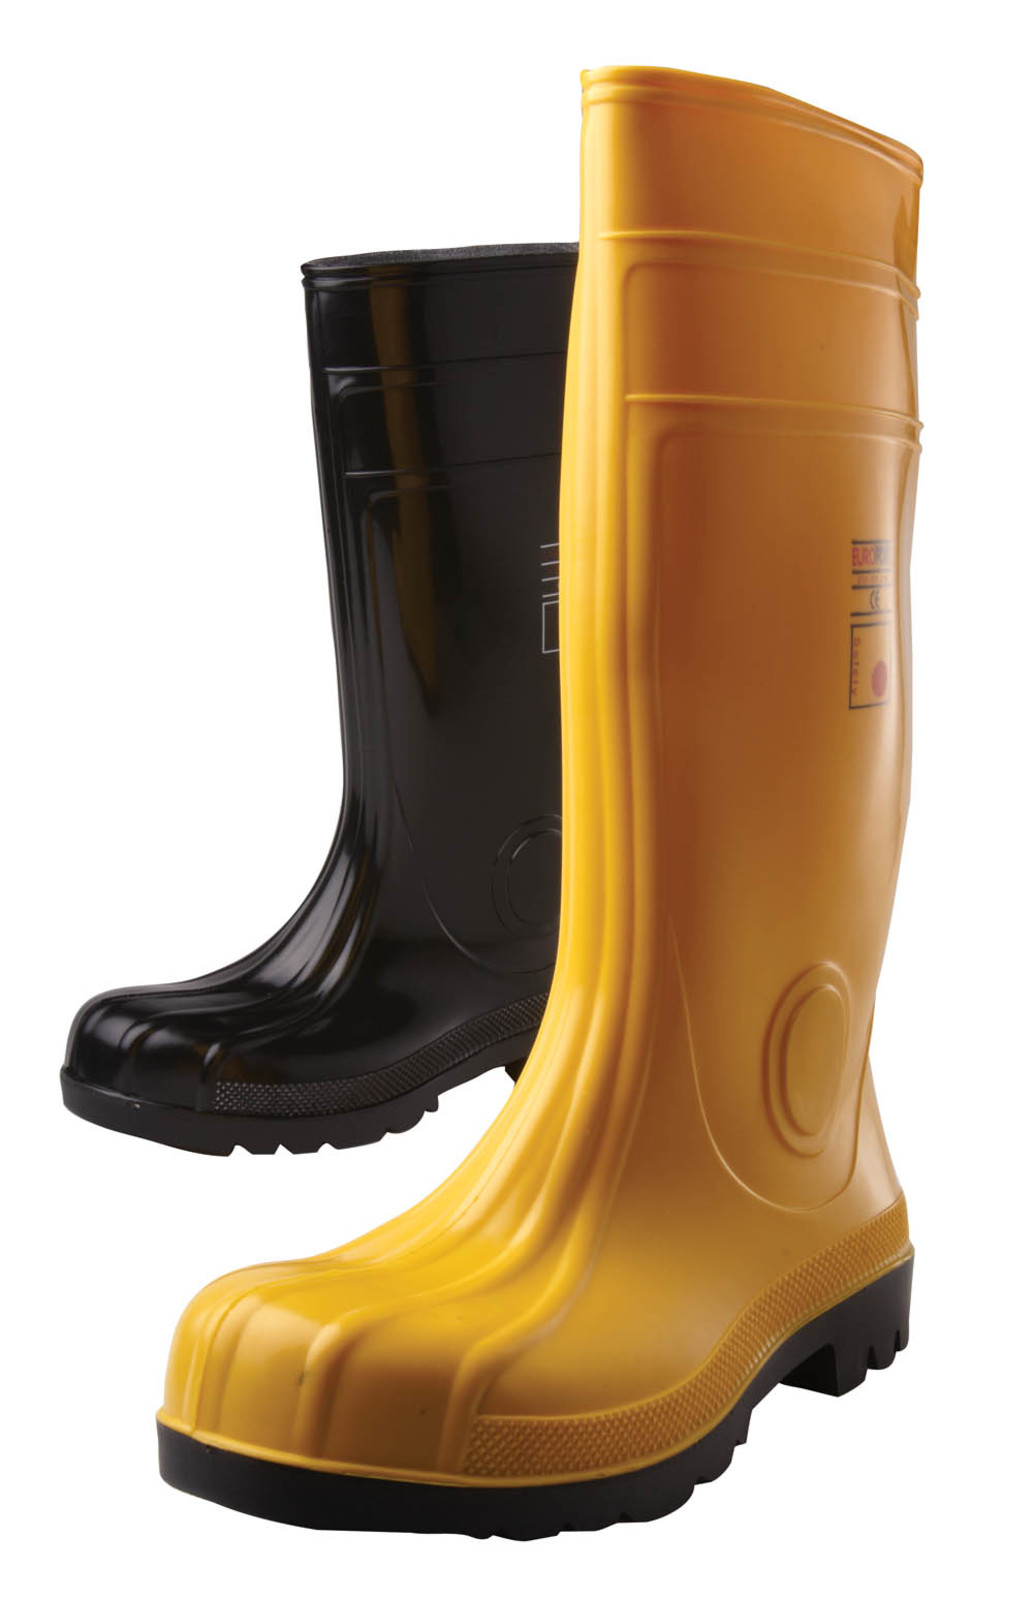 Gumáky Boots Eurofort  S5 - veľkosť: 47, farba: čierna